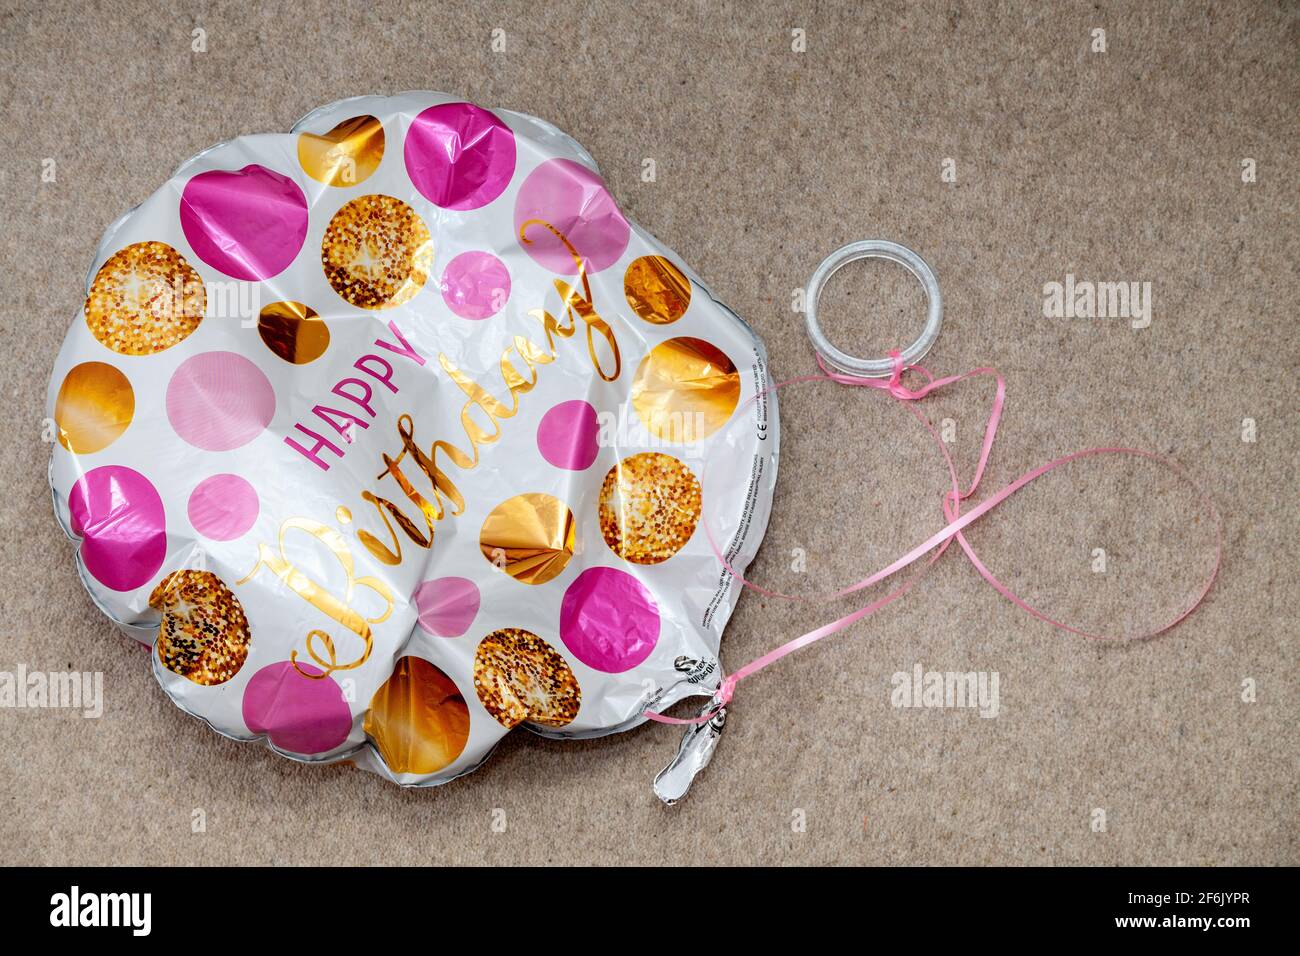 Un globo de feliz cumpleaños desinflado en el suelo Foto de stock